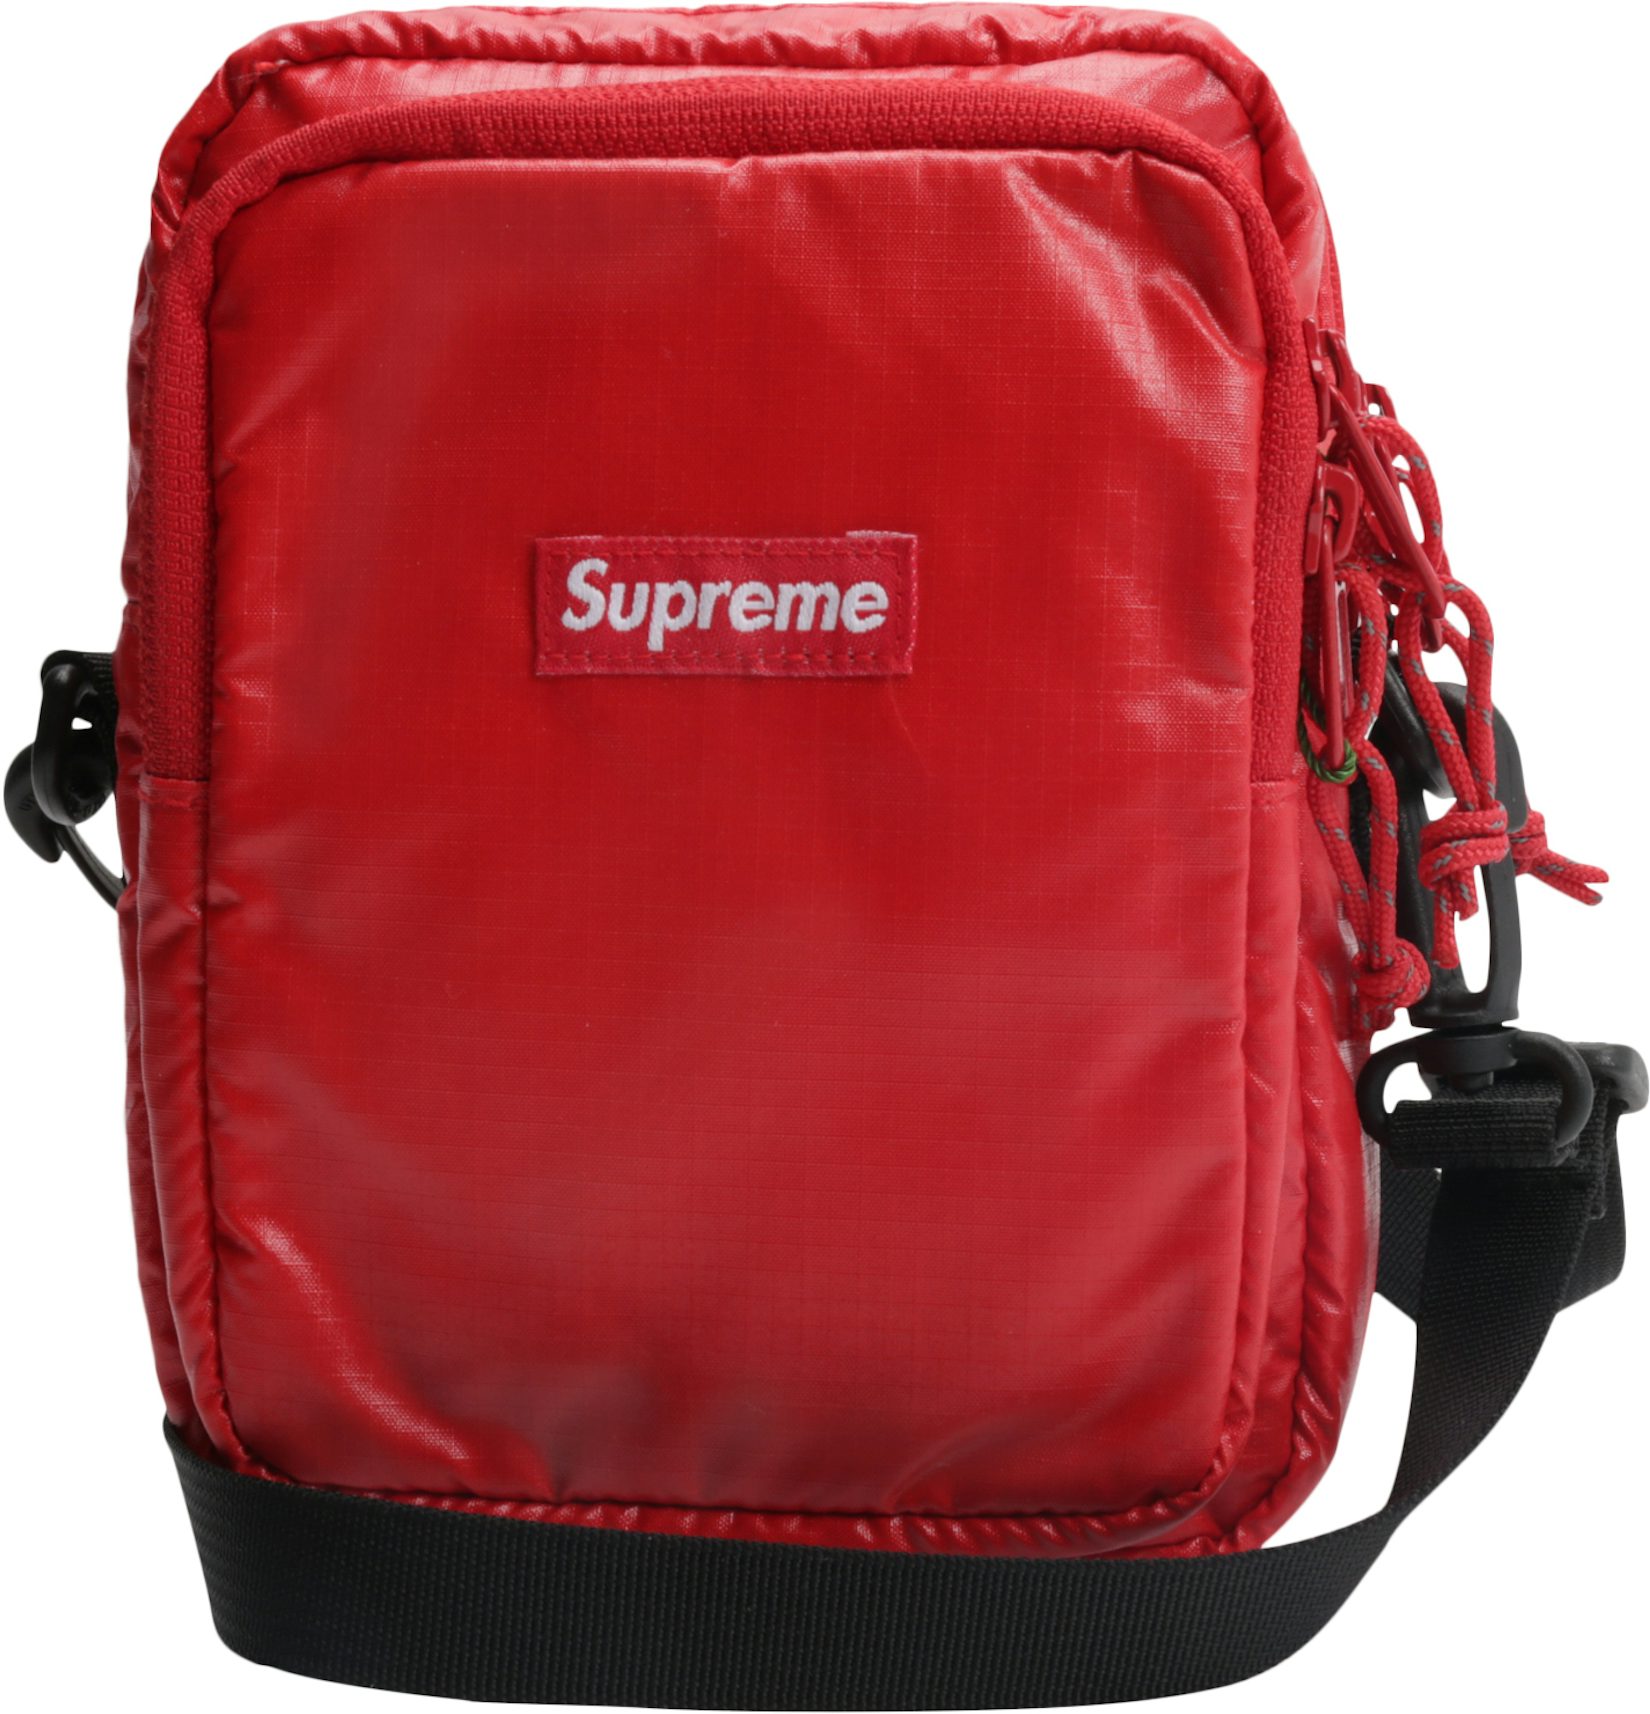 Supreme Shoulder Bag FW 22 Red - Stadium Goods